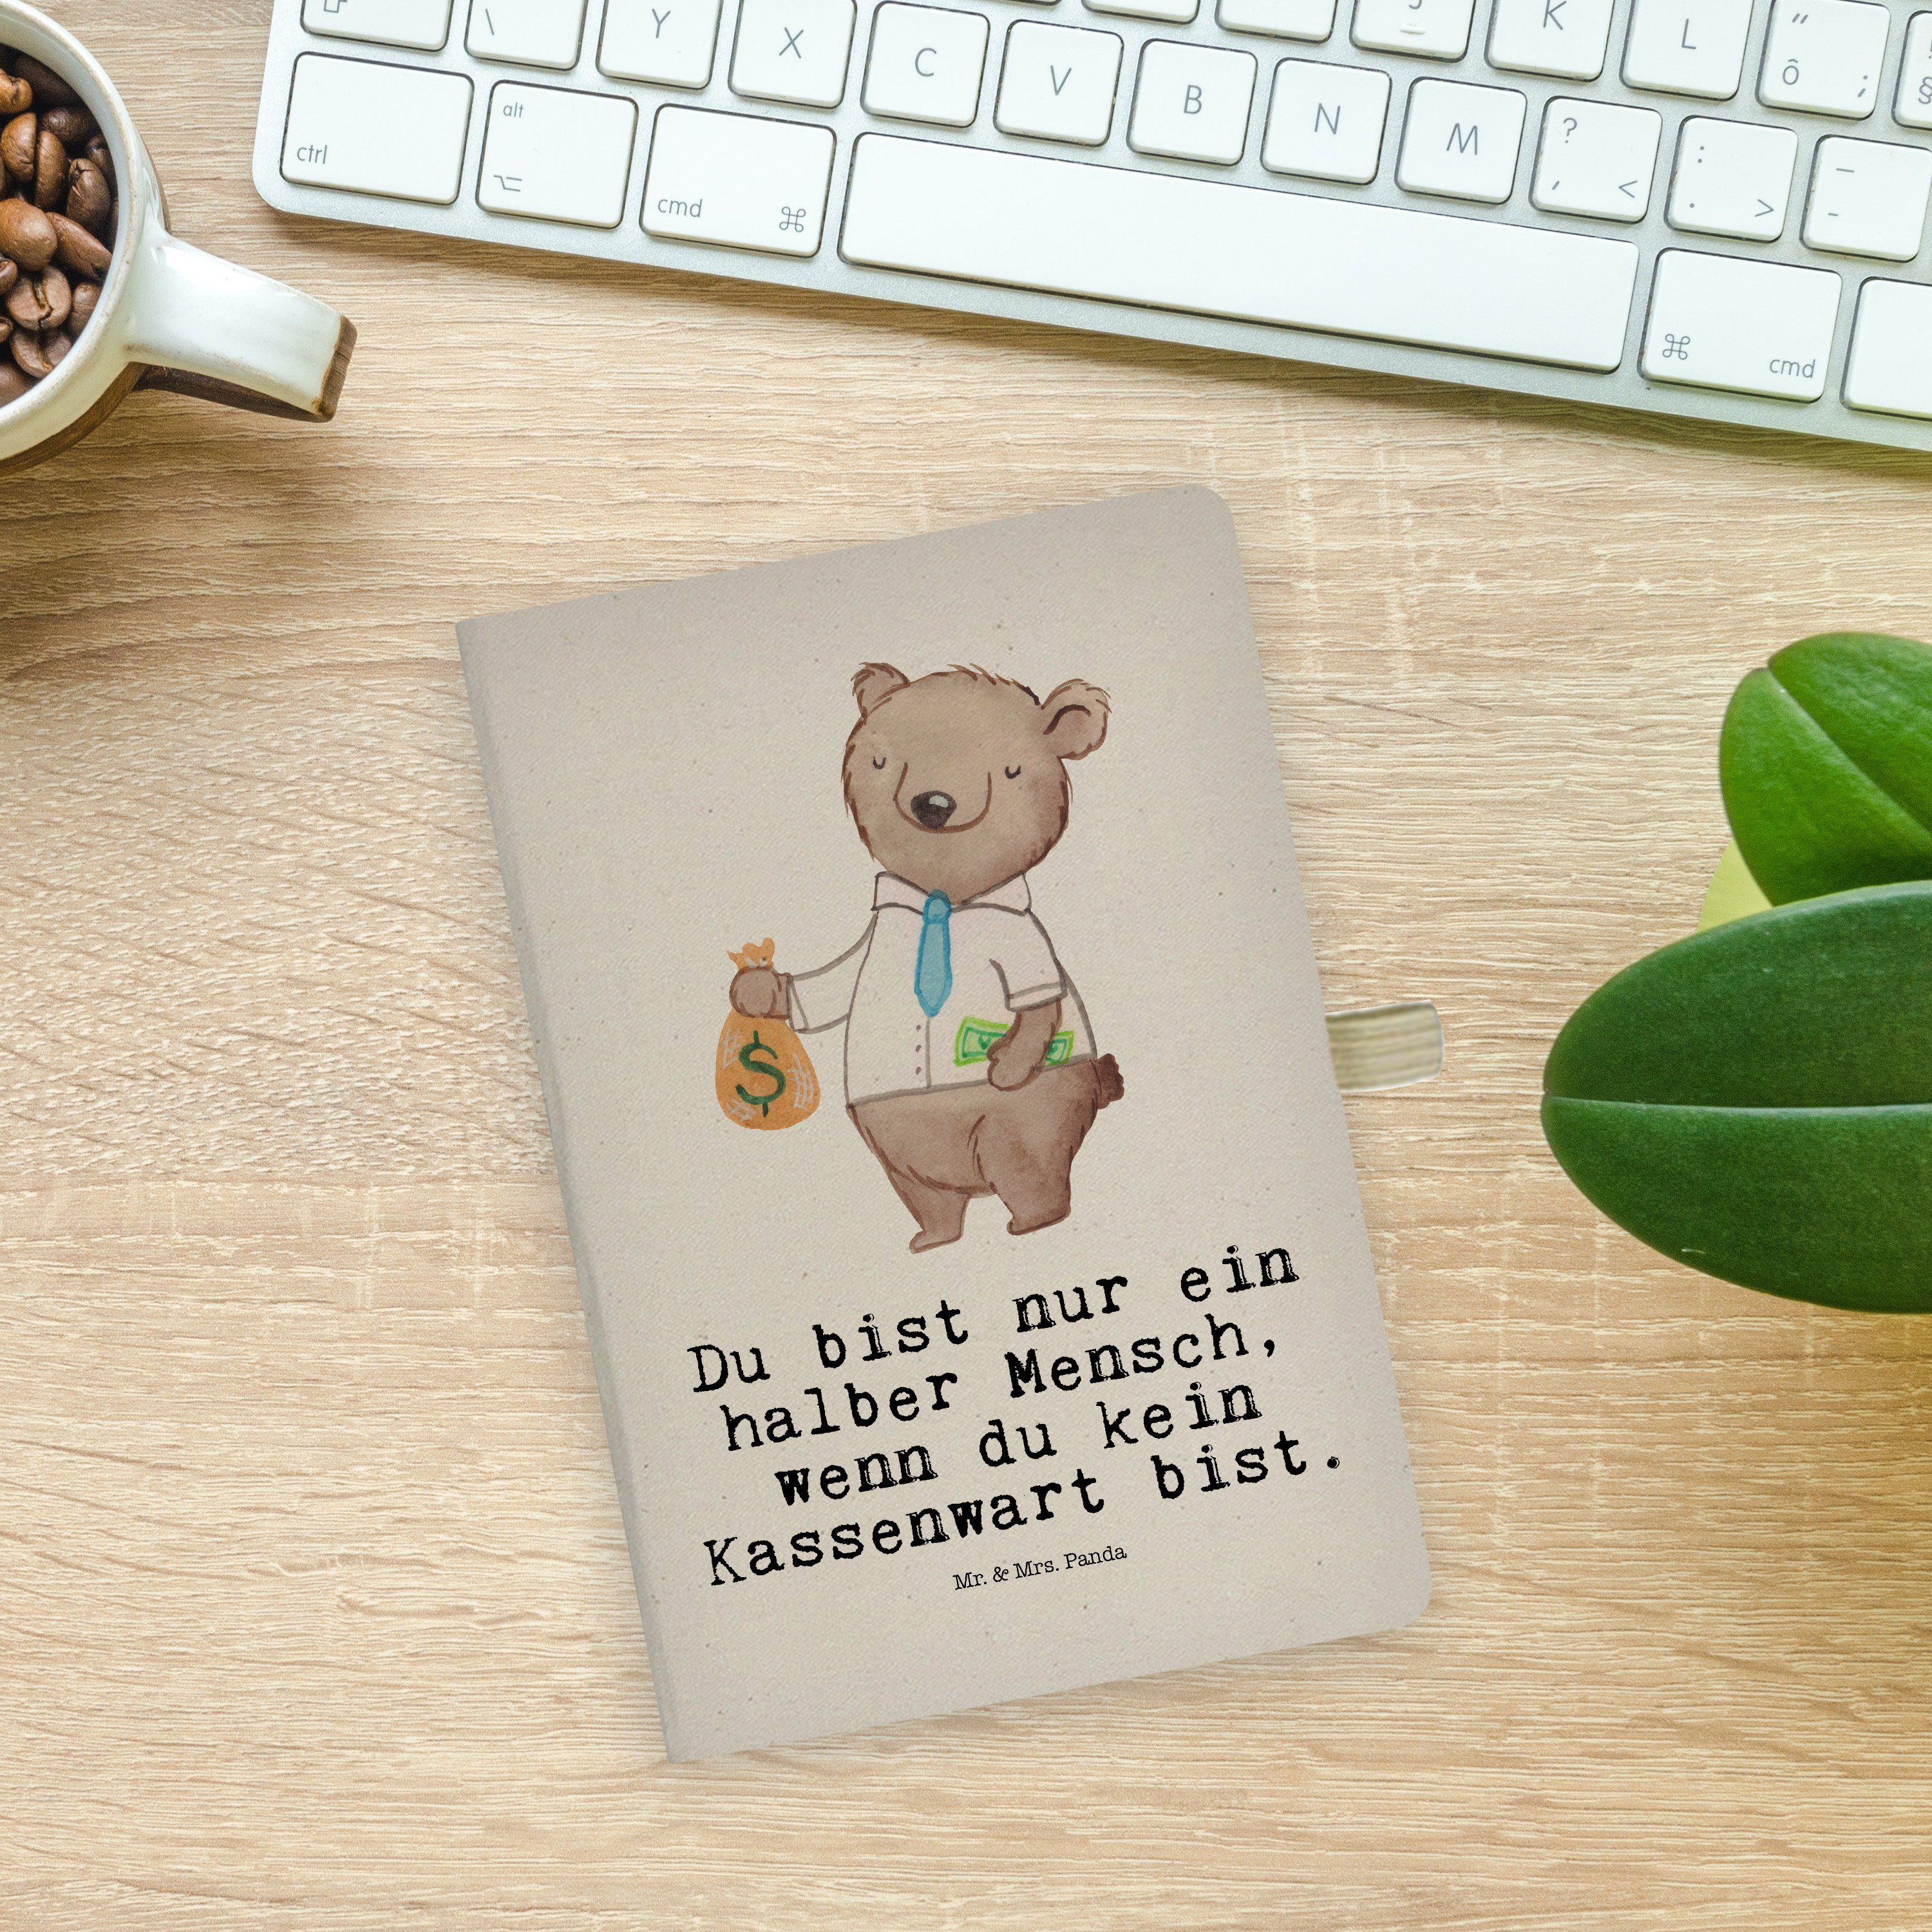 & & mit Panda Transparent Geschenk, Herz - Kassenwart Journal, Notizbuch Mrs. Schr Mr. - Mrs. Mr. Panda Tagebuch,